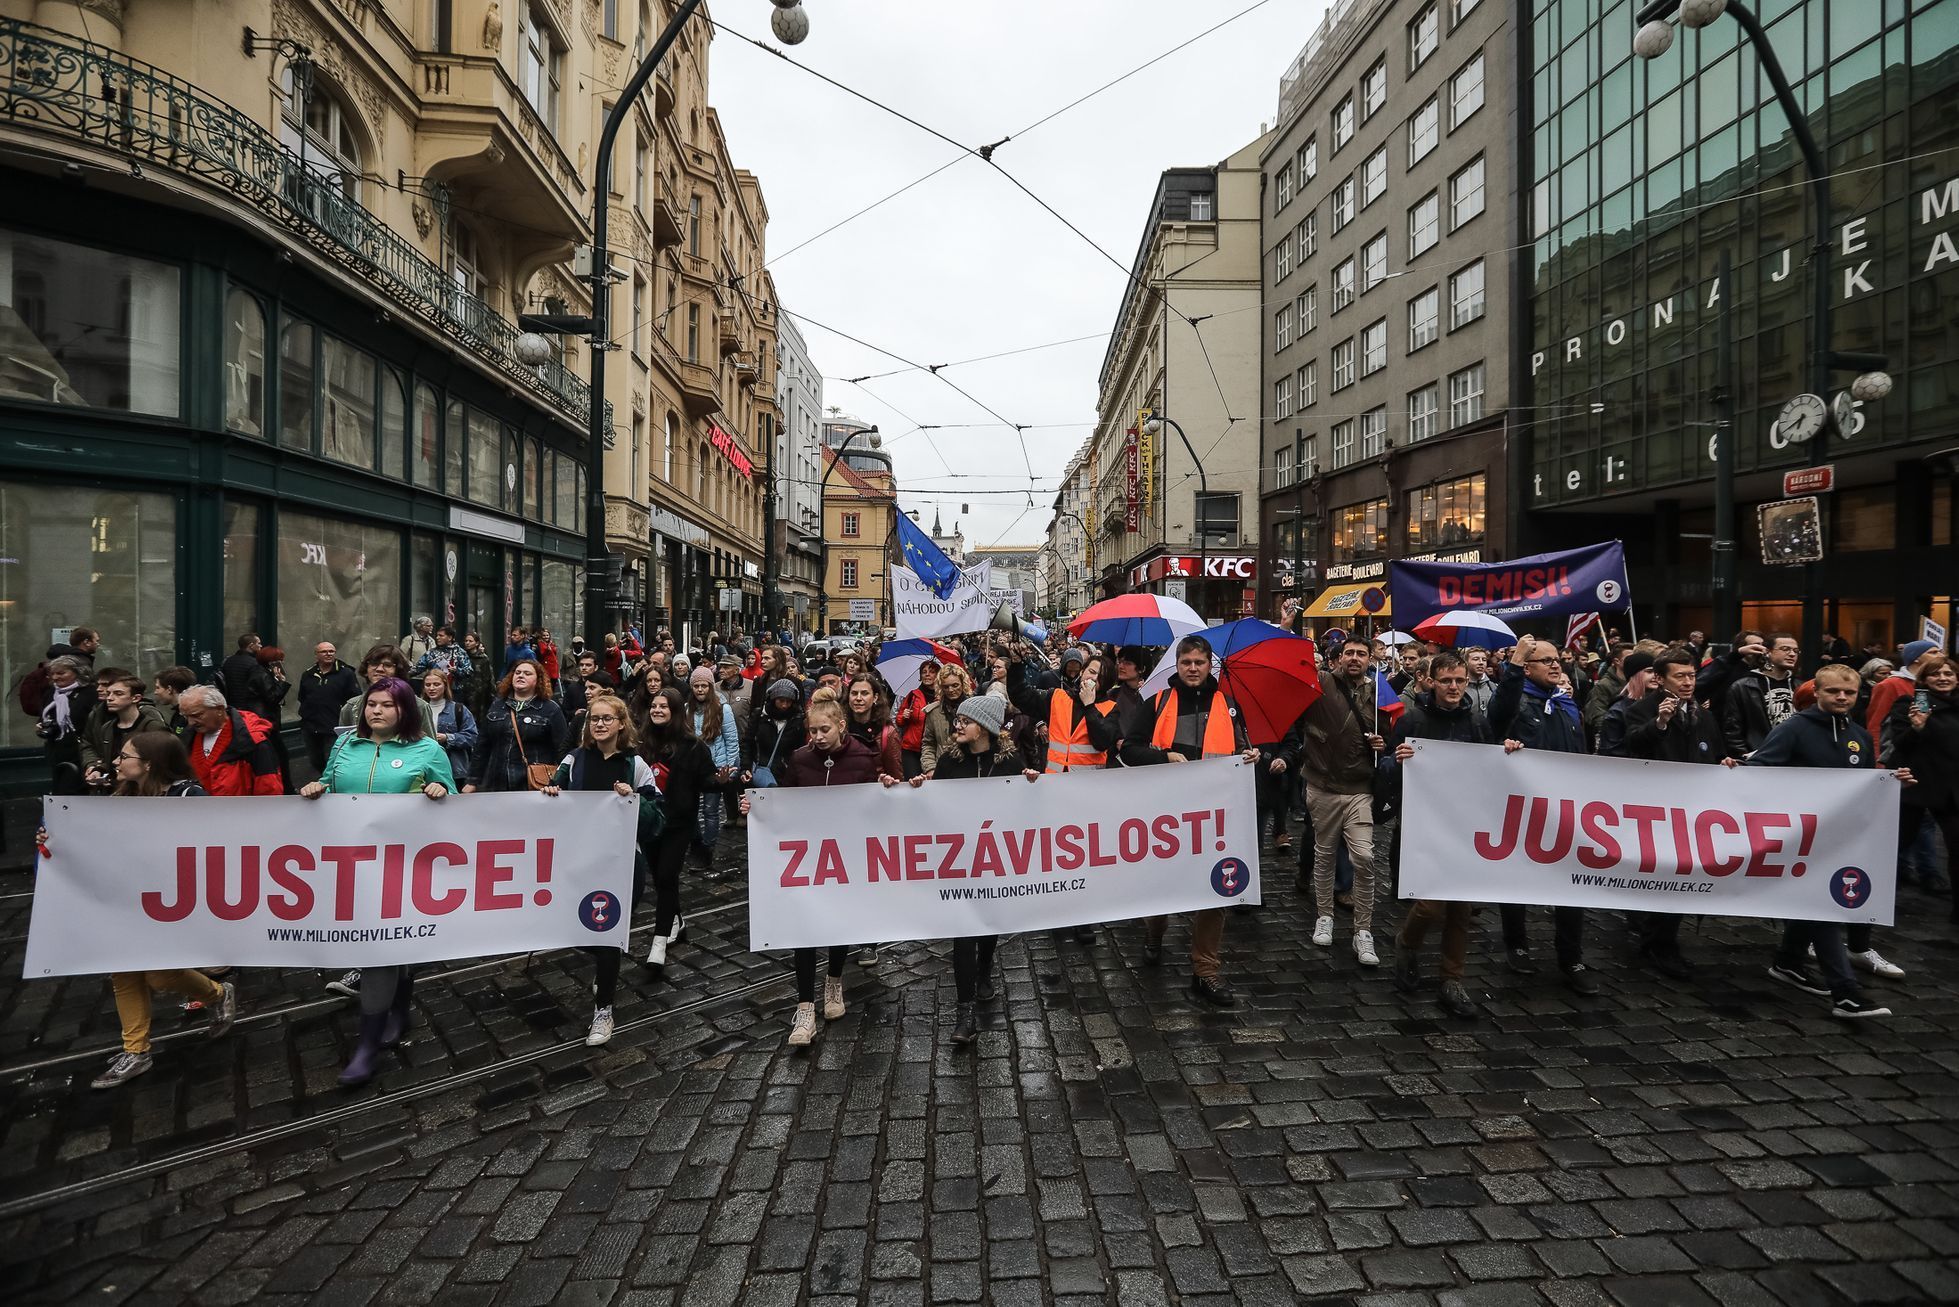 Protest / pochod / demonstrace proti jmenování Marie Benešové ministryní, Milion chvilek pro demokracii, Praha